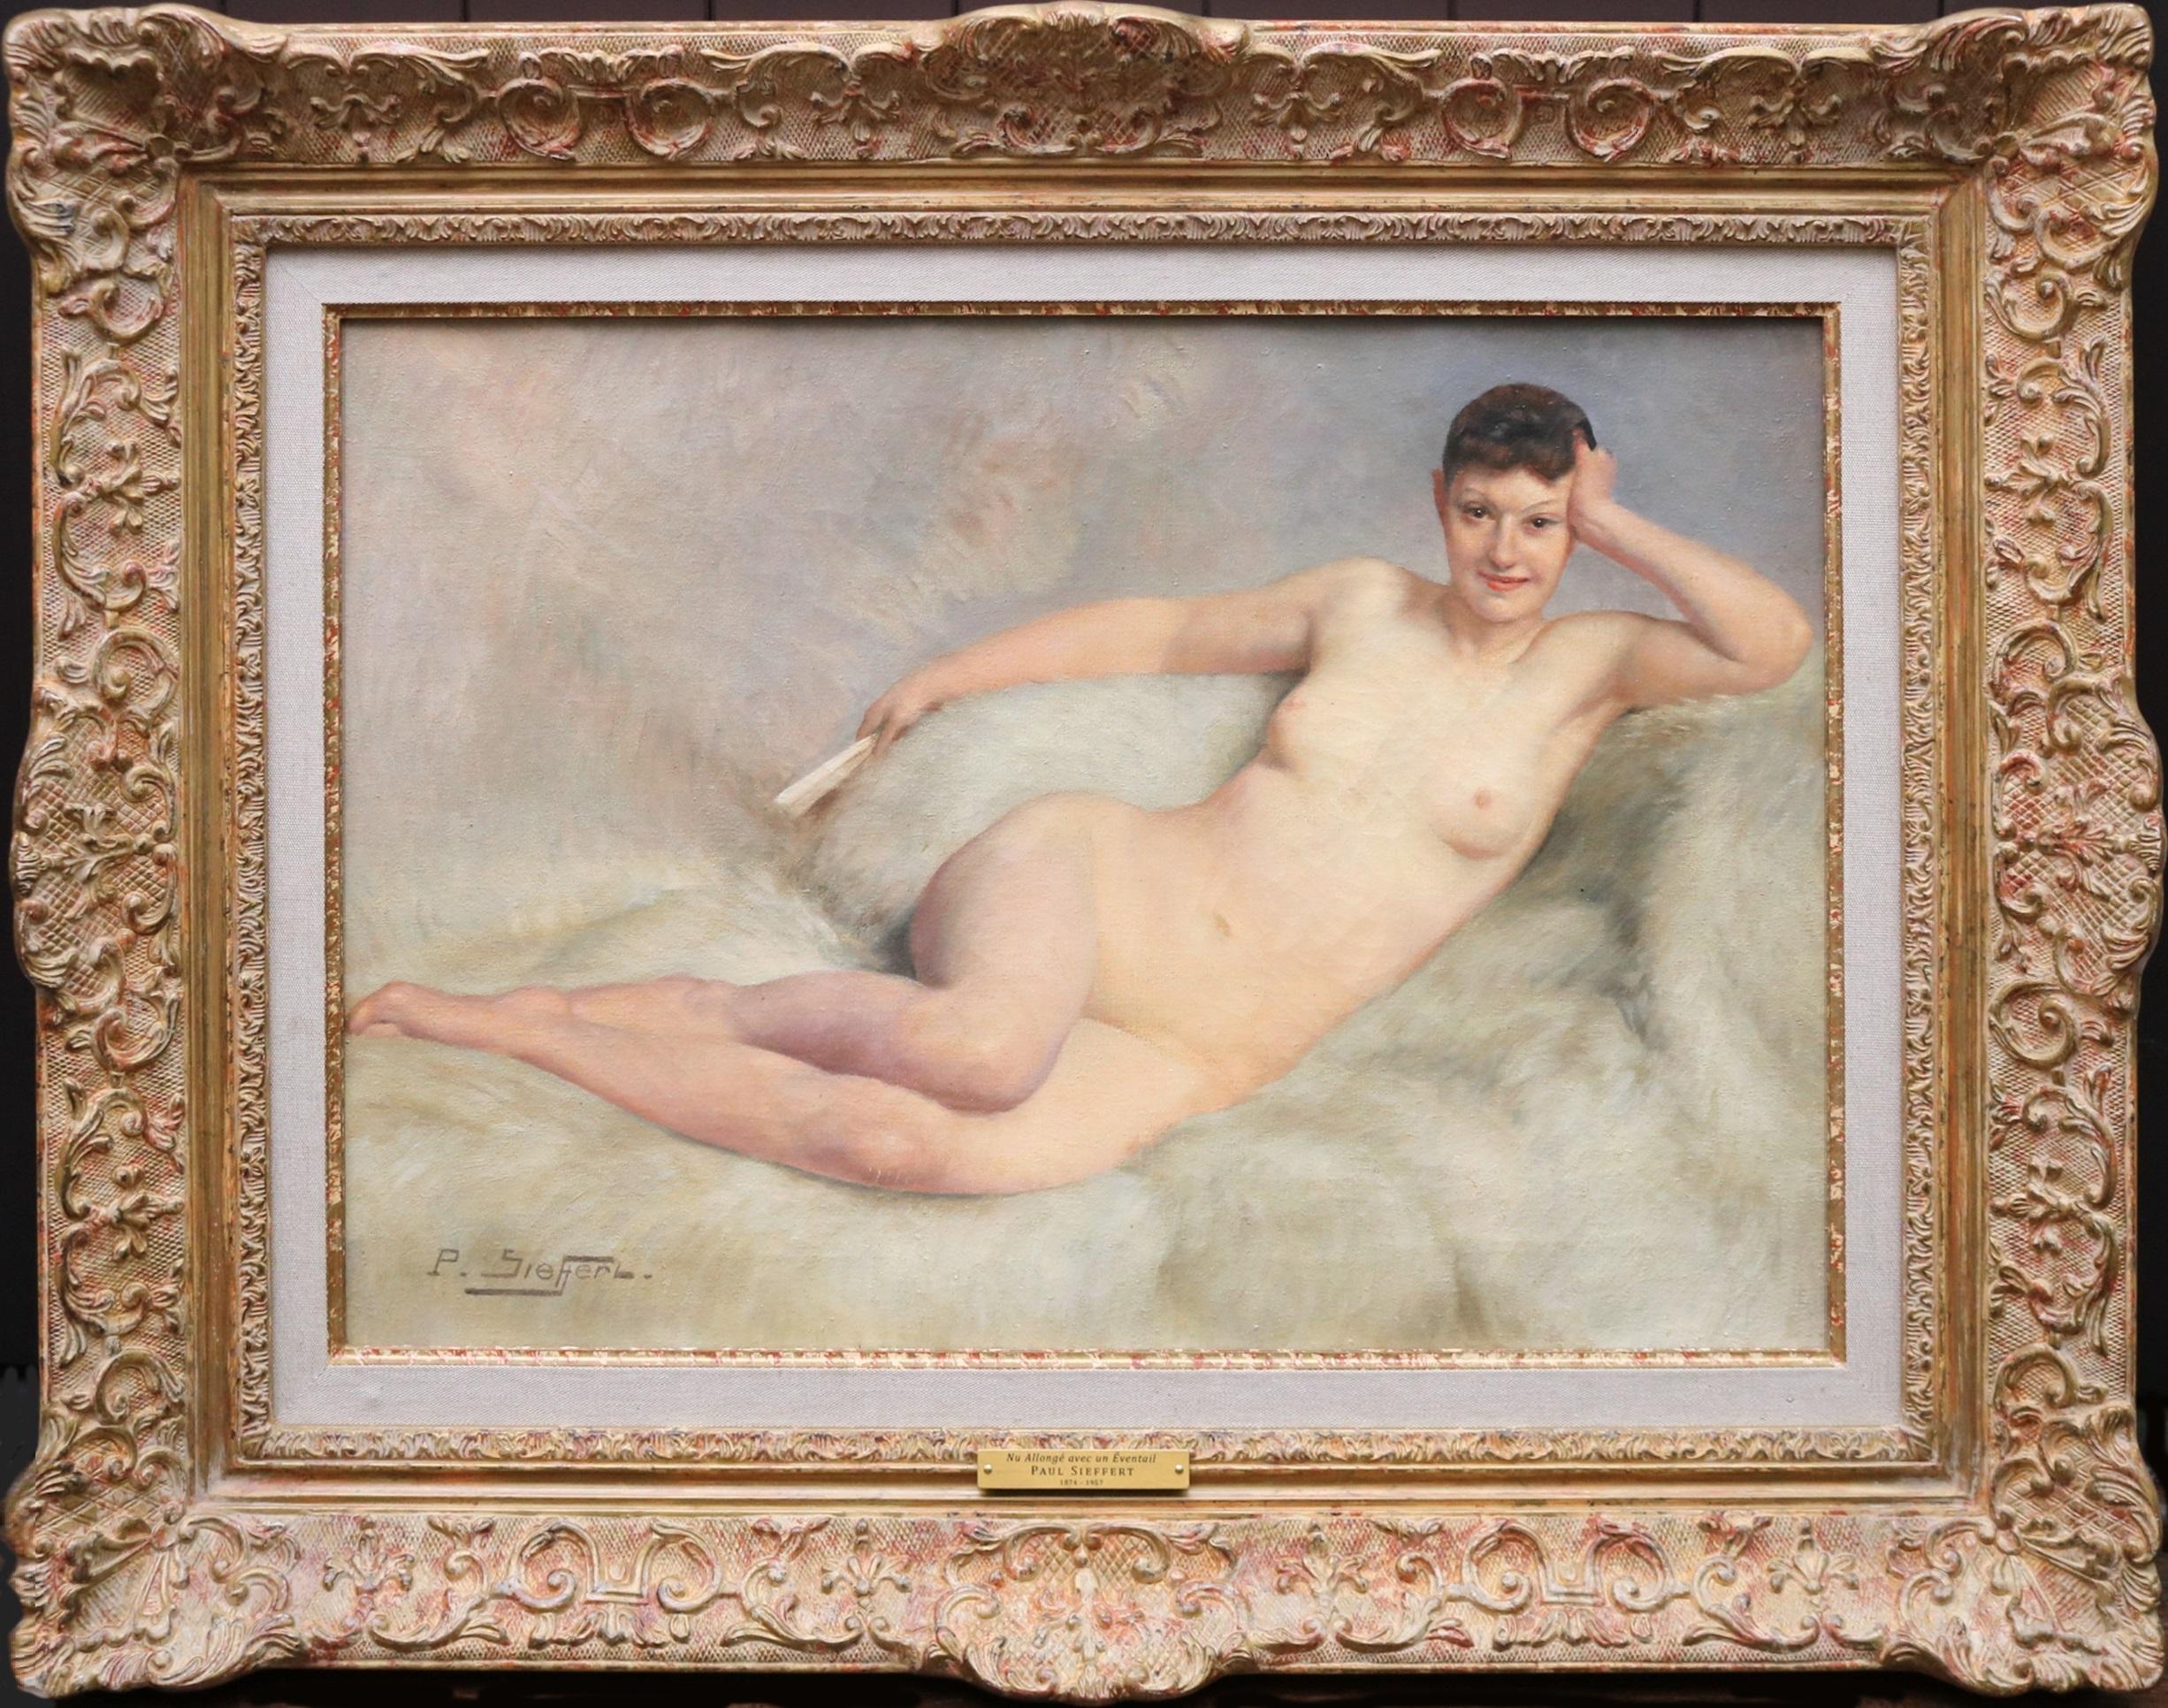 Paul Sieffert Figurative Painting - Nu Allongé avec un Éventail - French Fin de Siècle Nude Oil Painting Paris Salon